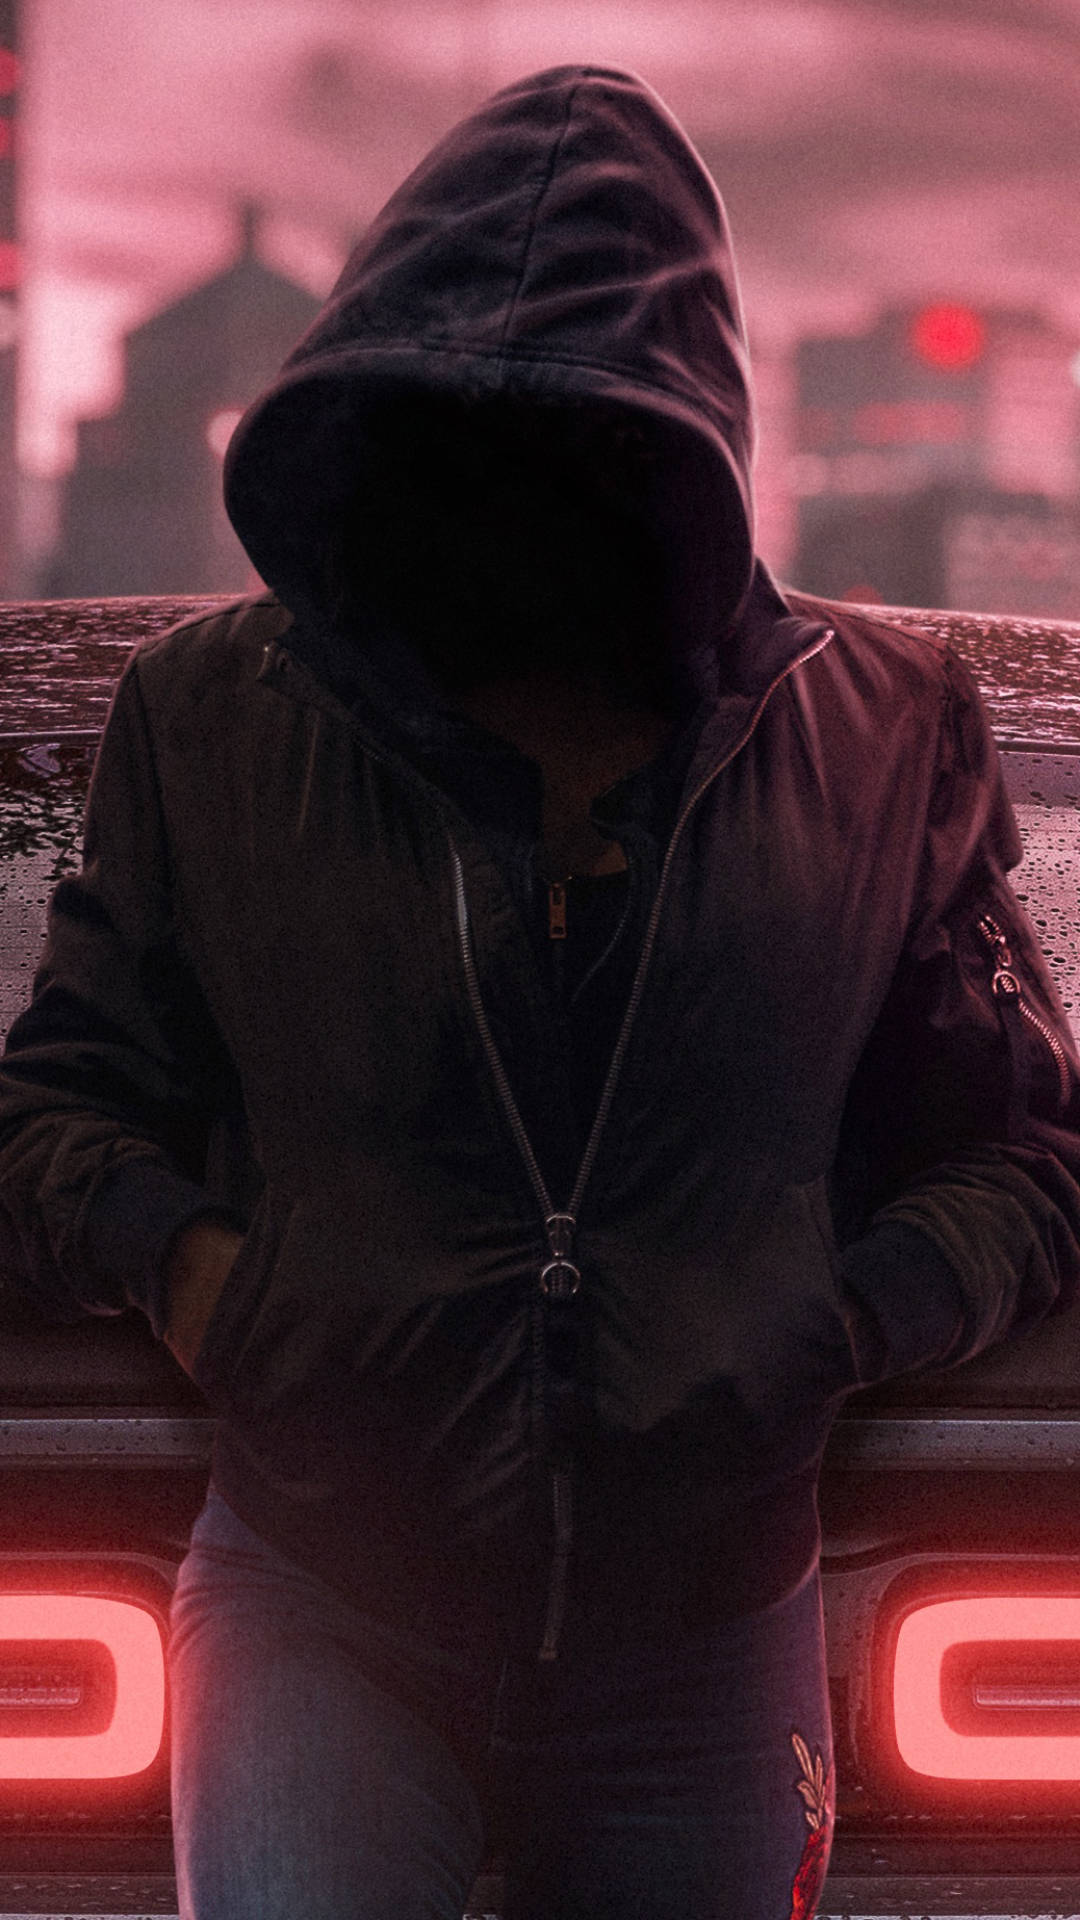 Hooded Stranger on Phone in an Urban Setting Wallpaper